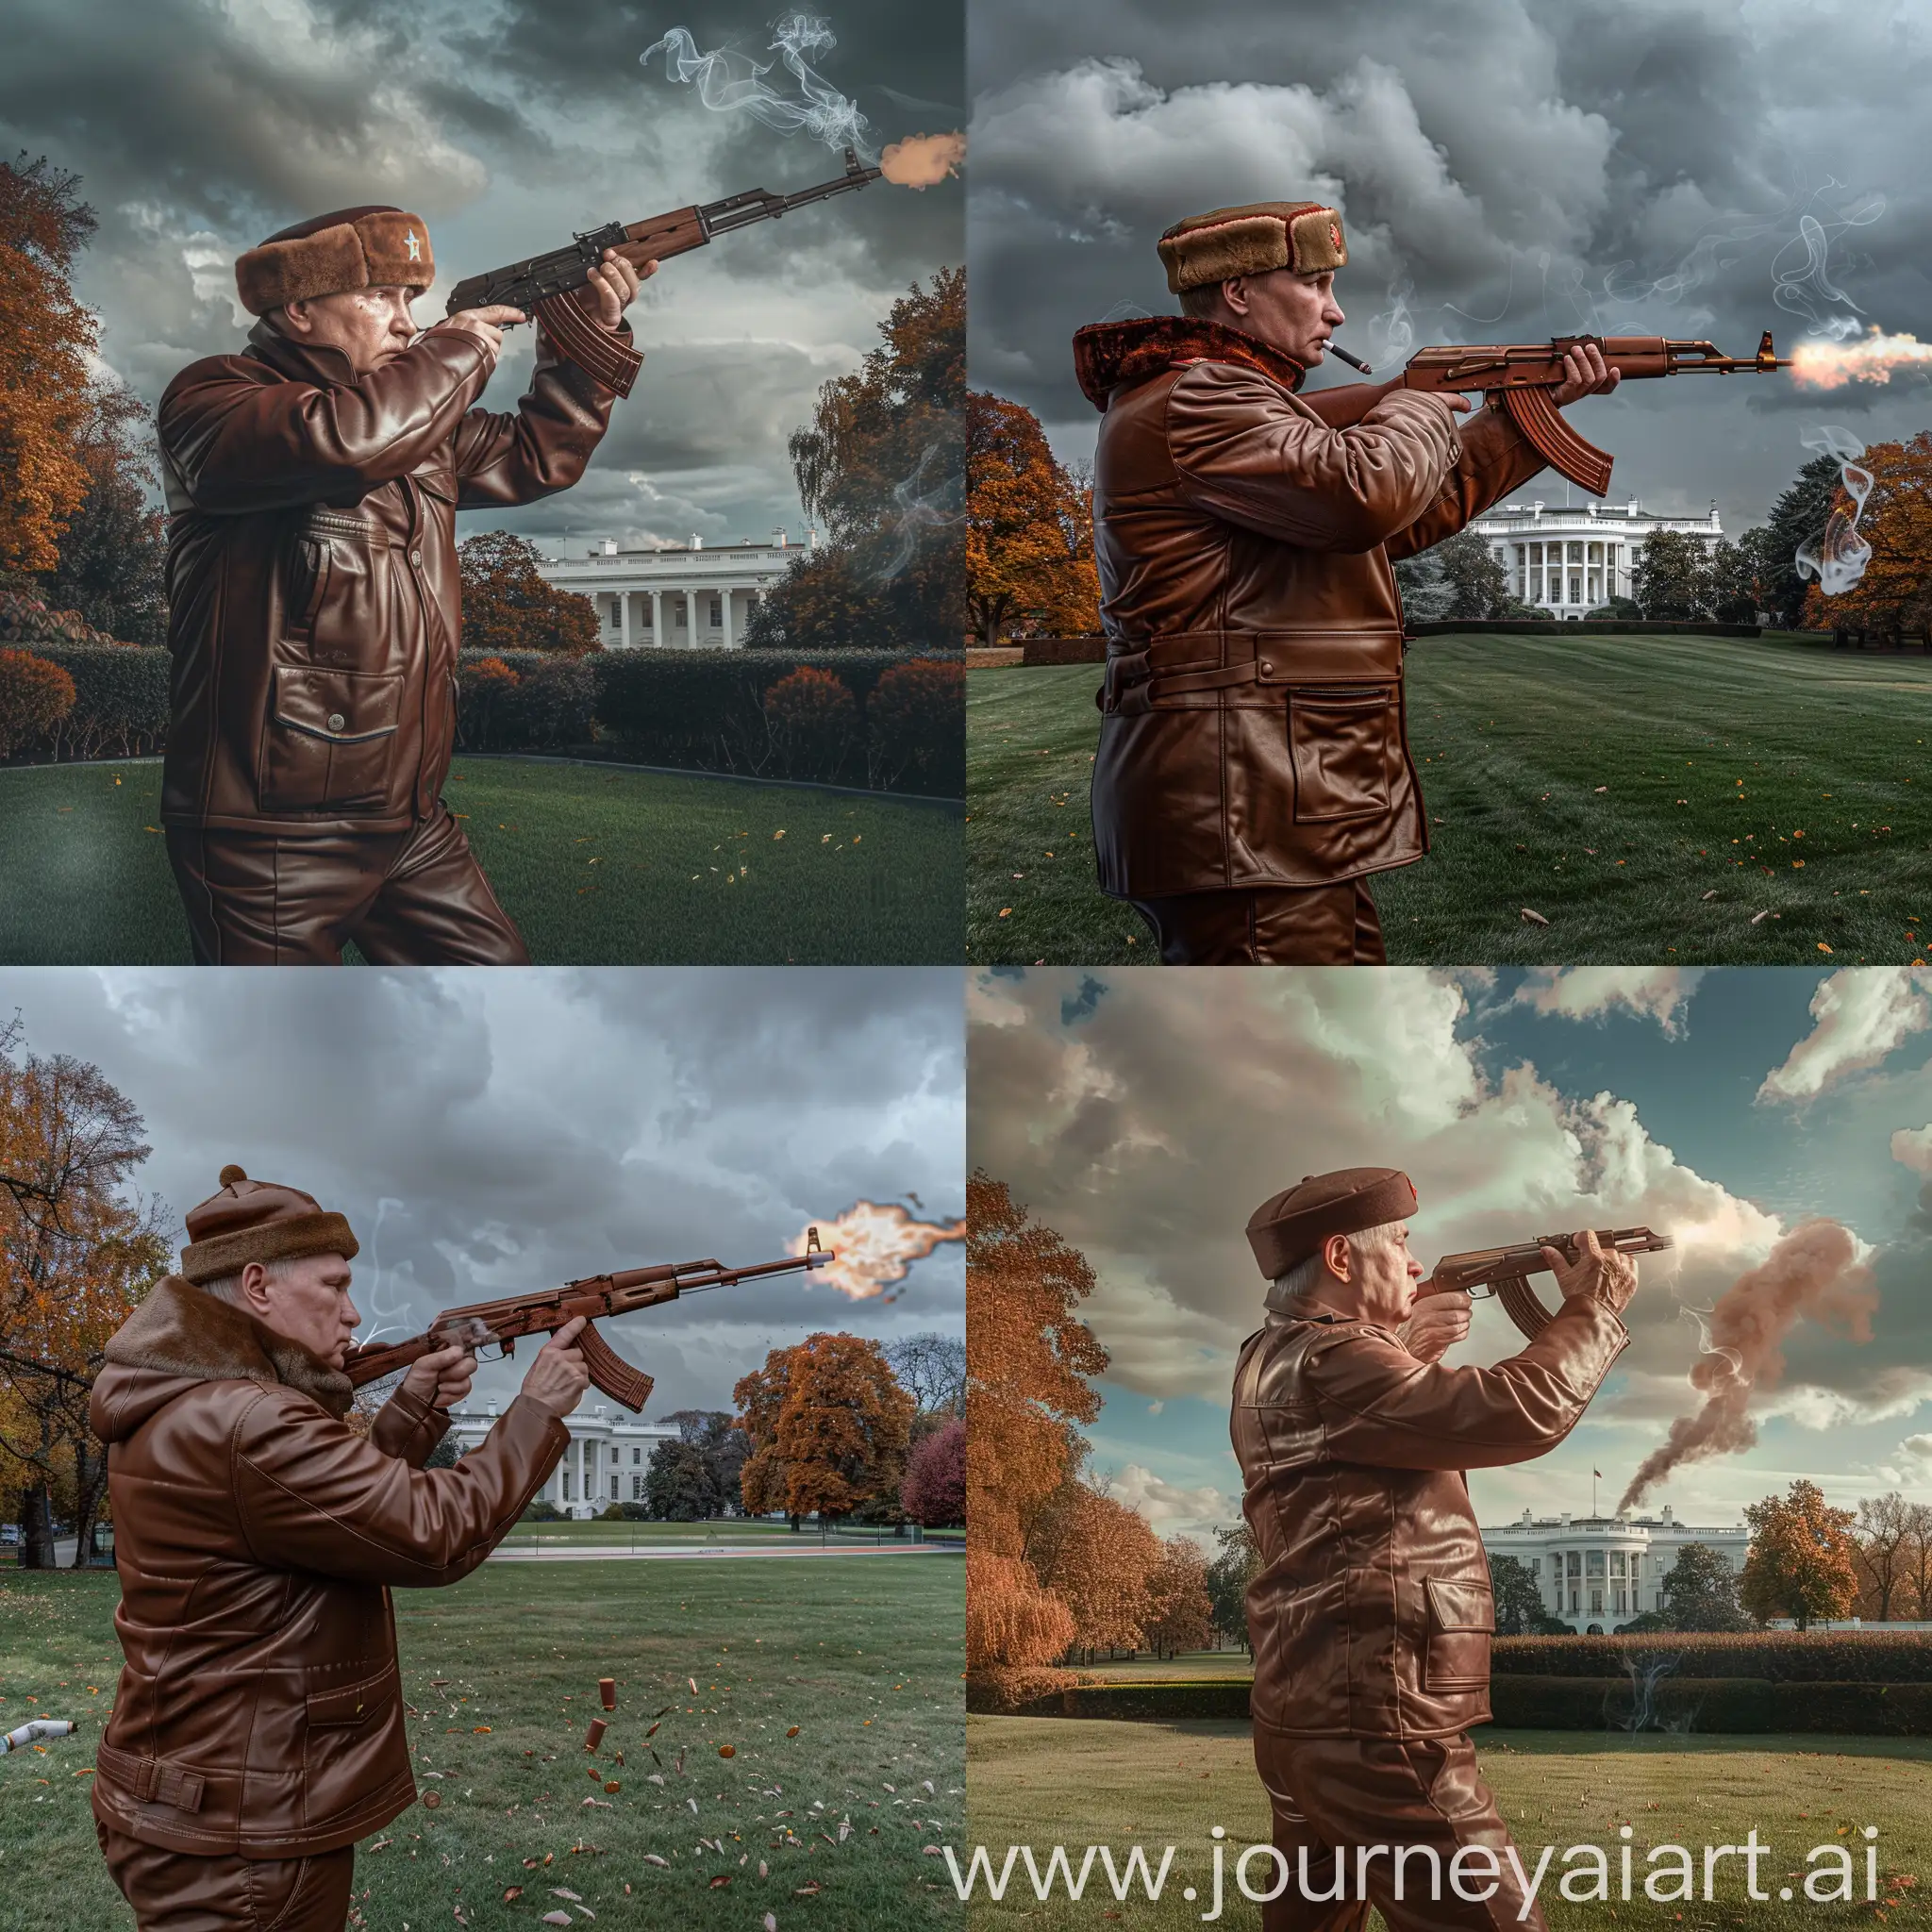 Elderly-Man-in-Soviet-Attire-Firing-Rifle-Near-White-House